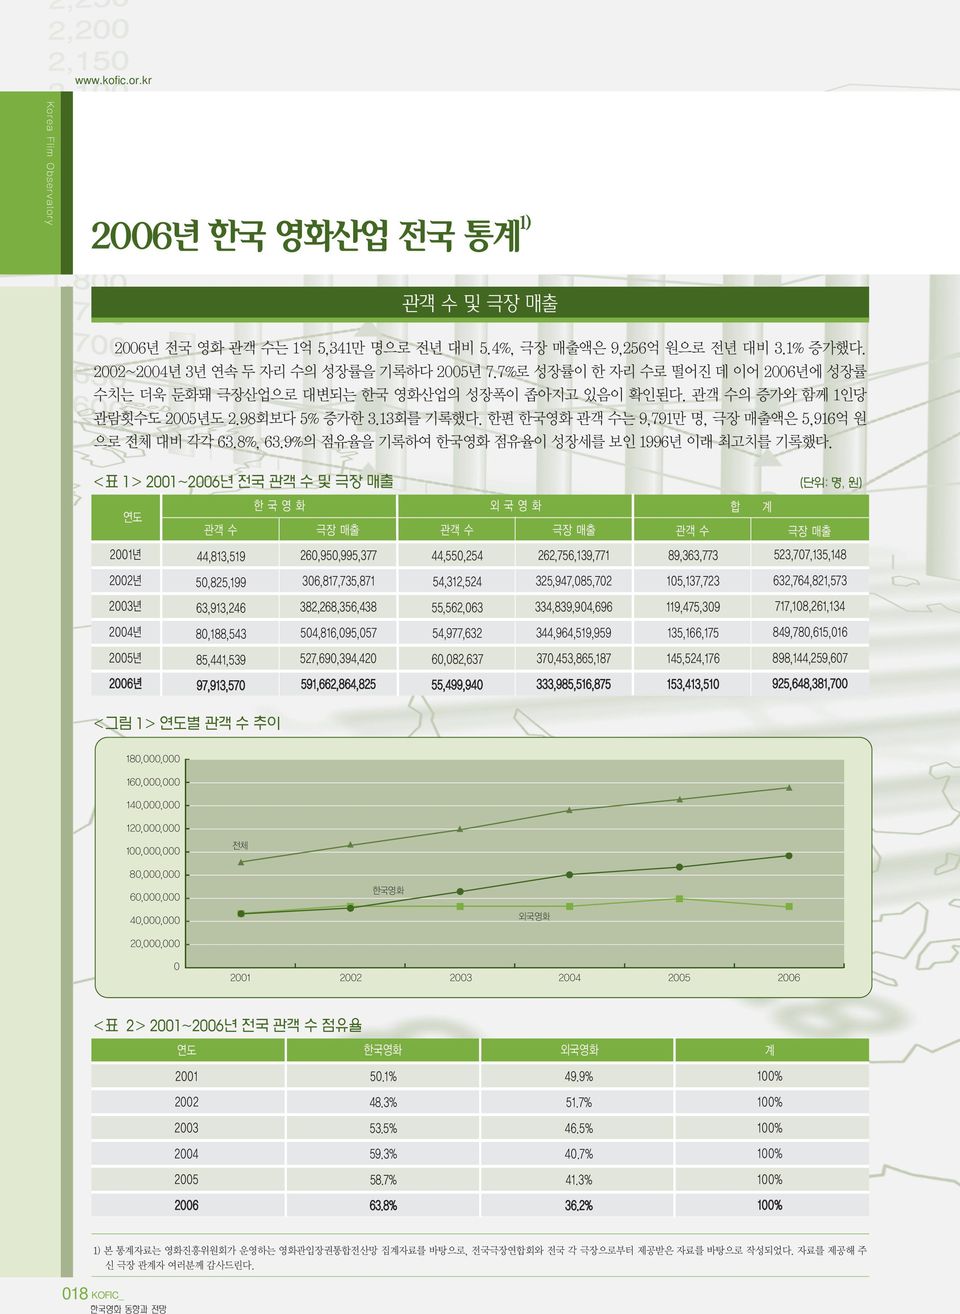 8%, 63.9%의 점유율을 기록하여 한국영화 점유율이 성장세를 보인 1996년 이래 최고치를 기록했다.